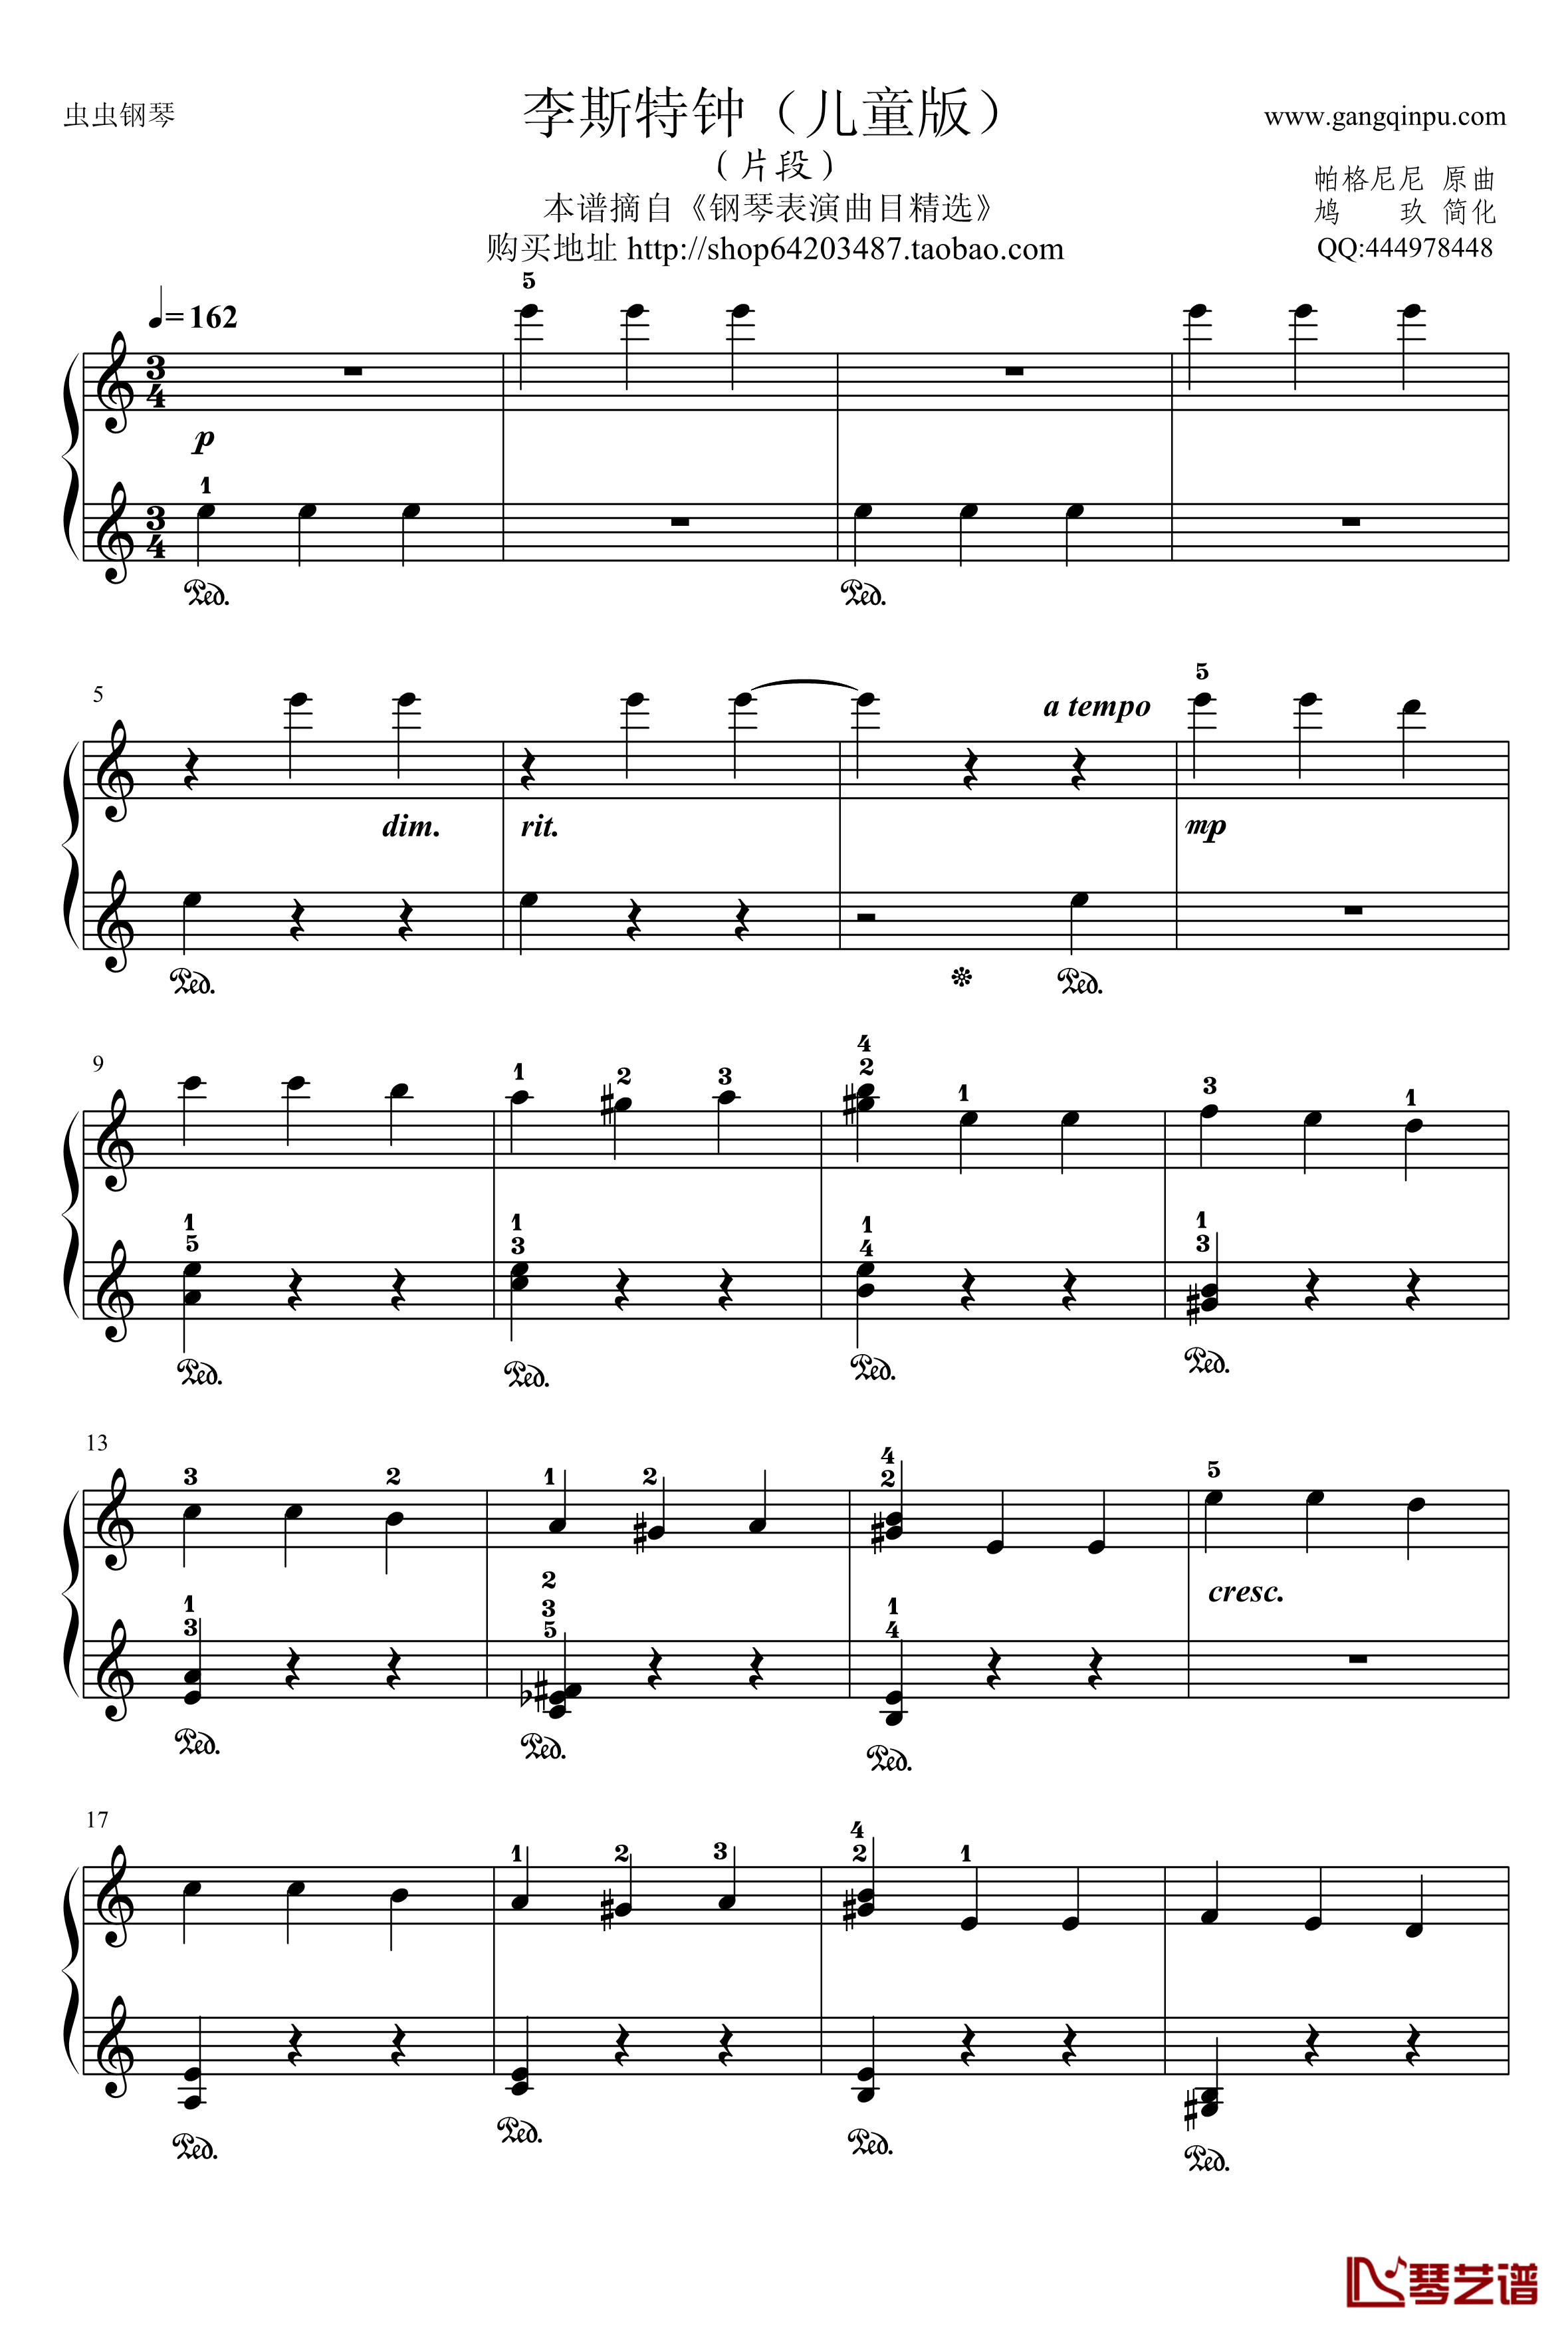 李斯特钟钢琴谱-帕格尼尼-儿童简化版1